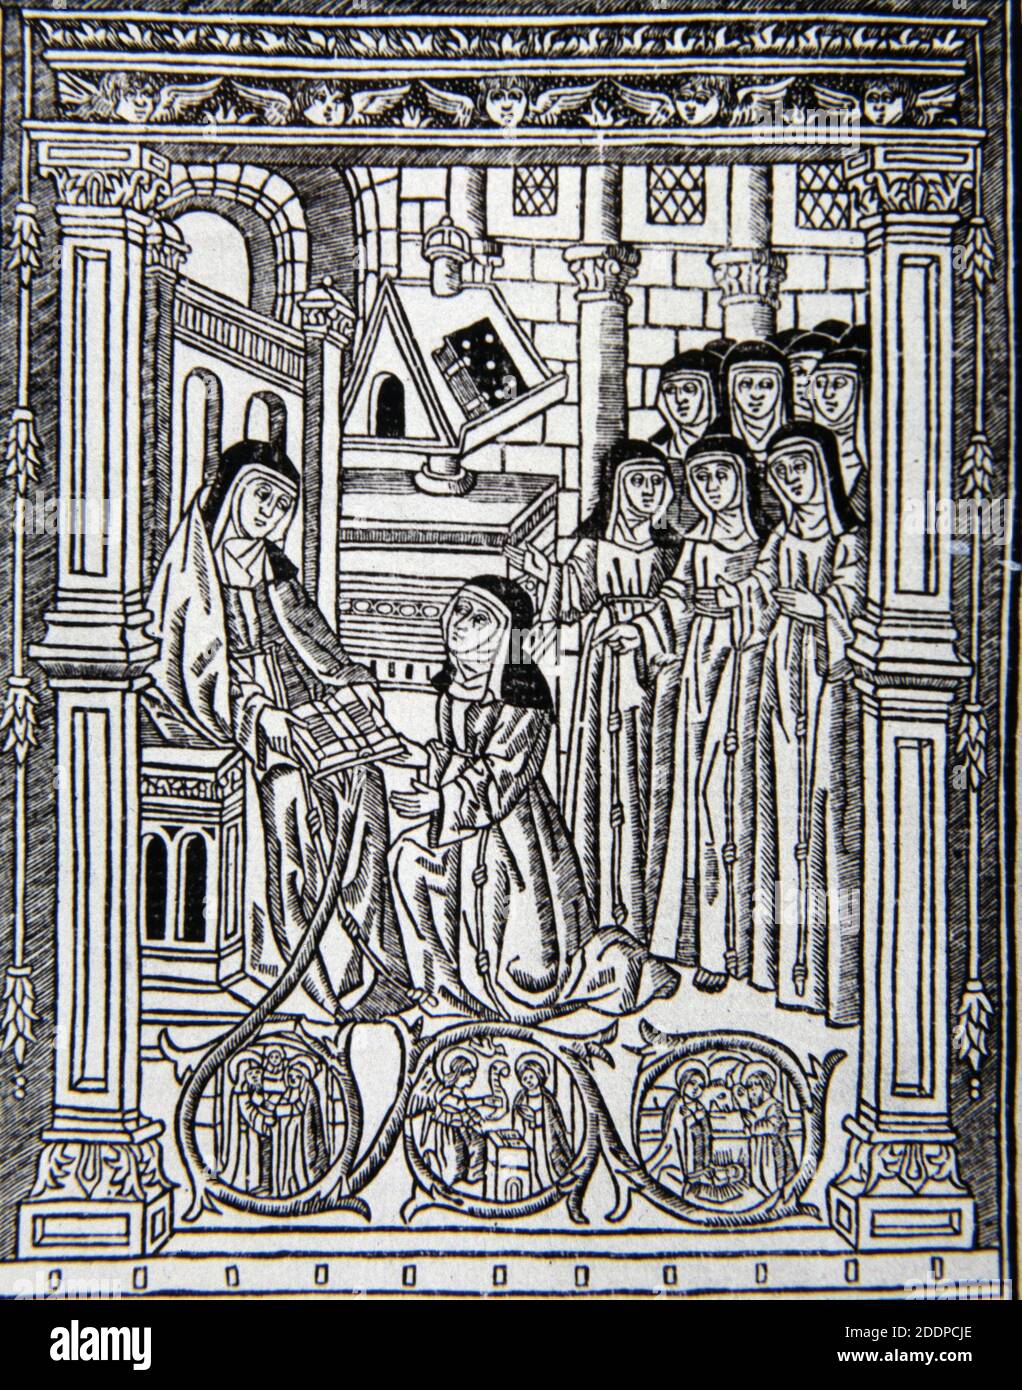 VILLENA, SOR ISABEL DE. ( LEONOR MANUEL DE VILLENA).. RELIGIOSA CLARISA. ESCRITORA.. VALENCIA 1430-1490.. 'VITA CHRISTI' AÑO 1513.. APARECE COMO ABADESA DEL CONVENTO DE LA SANTISIMA TRINIDAD DE VALENCIA. Stock Photo